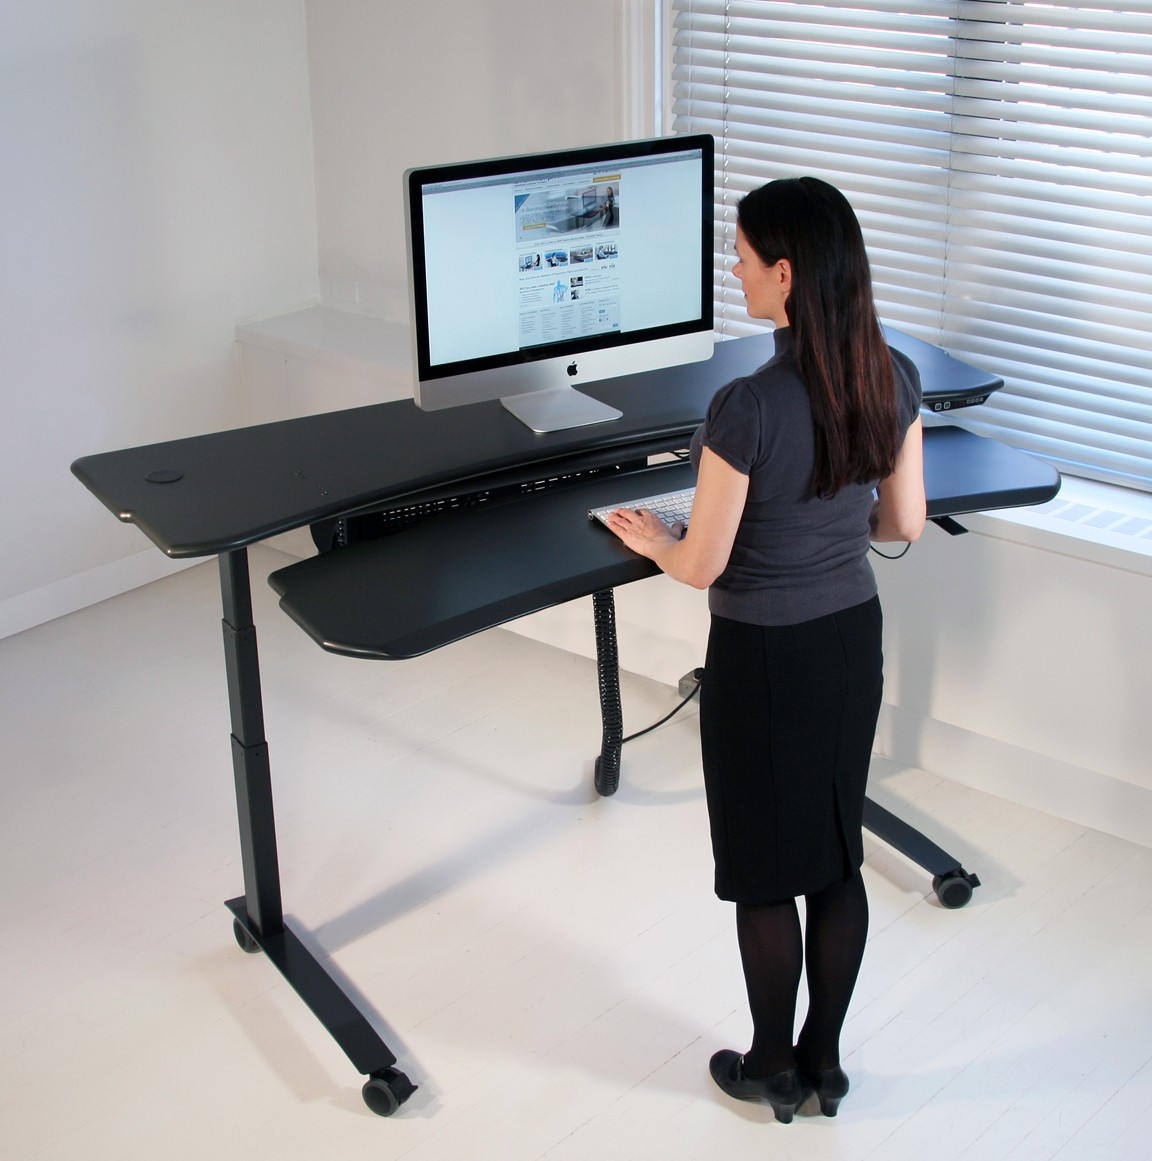 Adjustable sit-stand desks